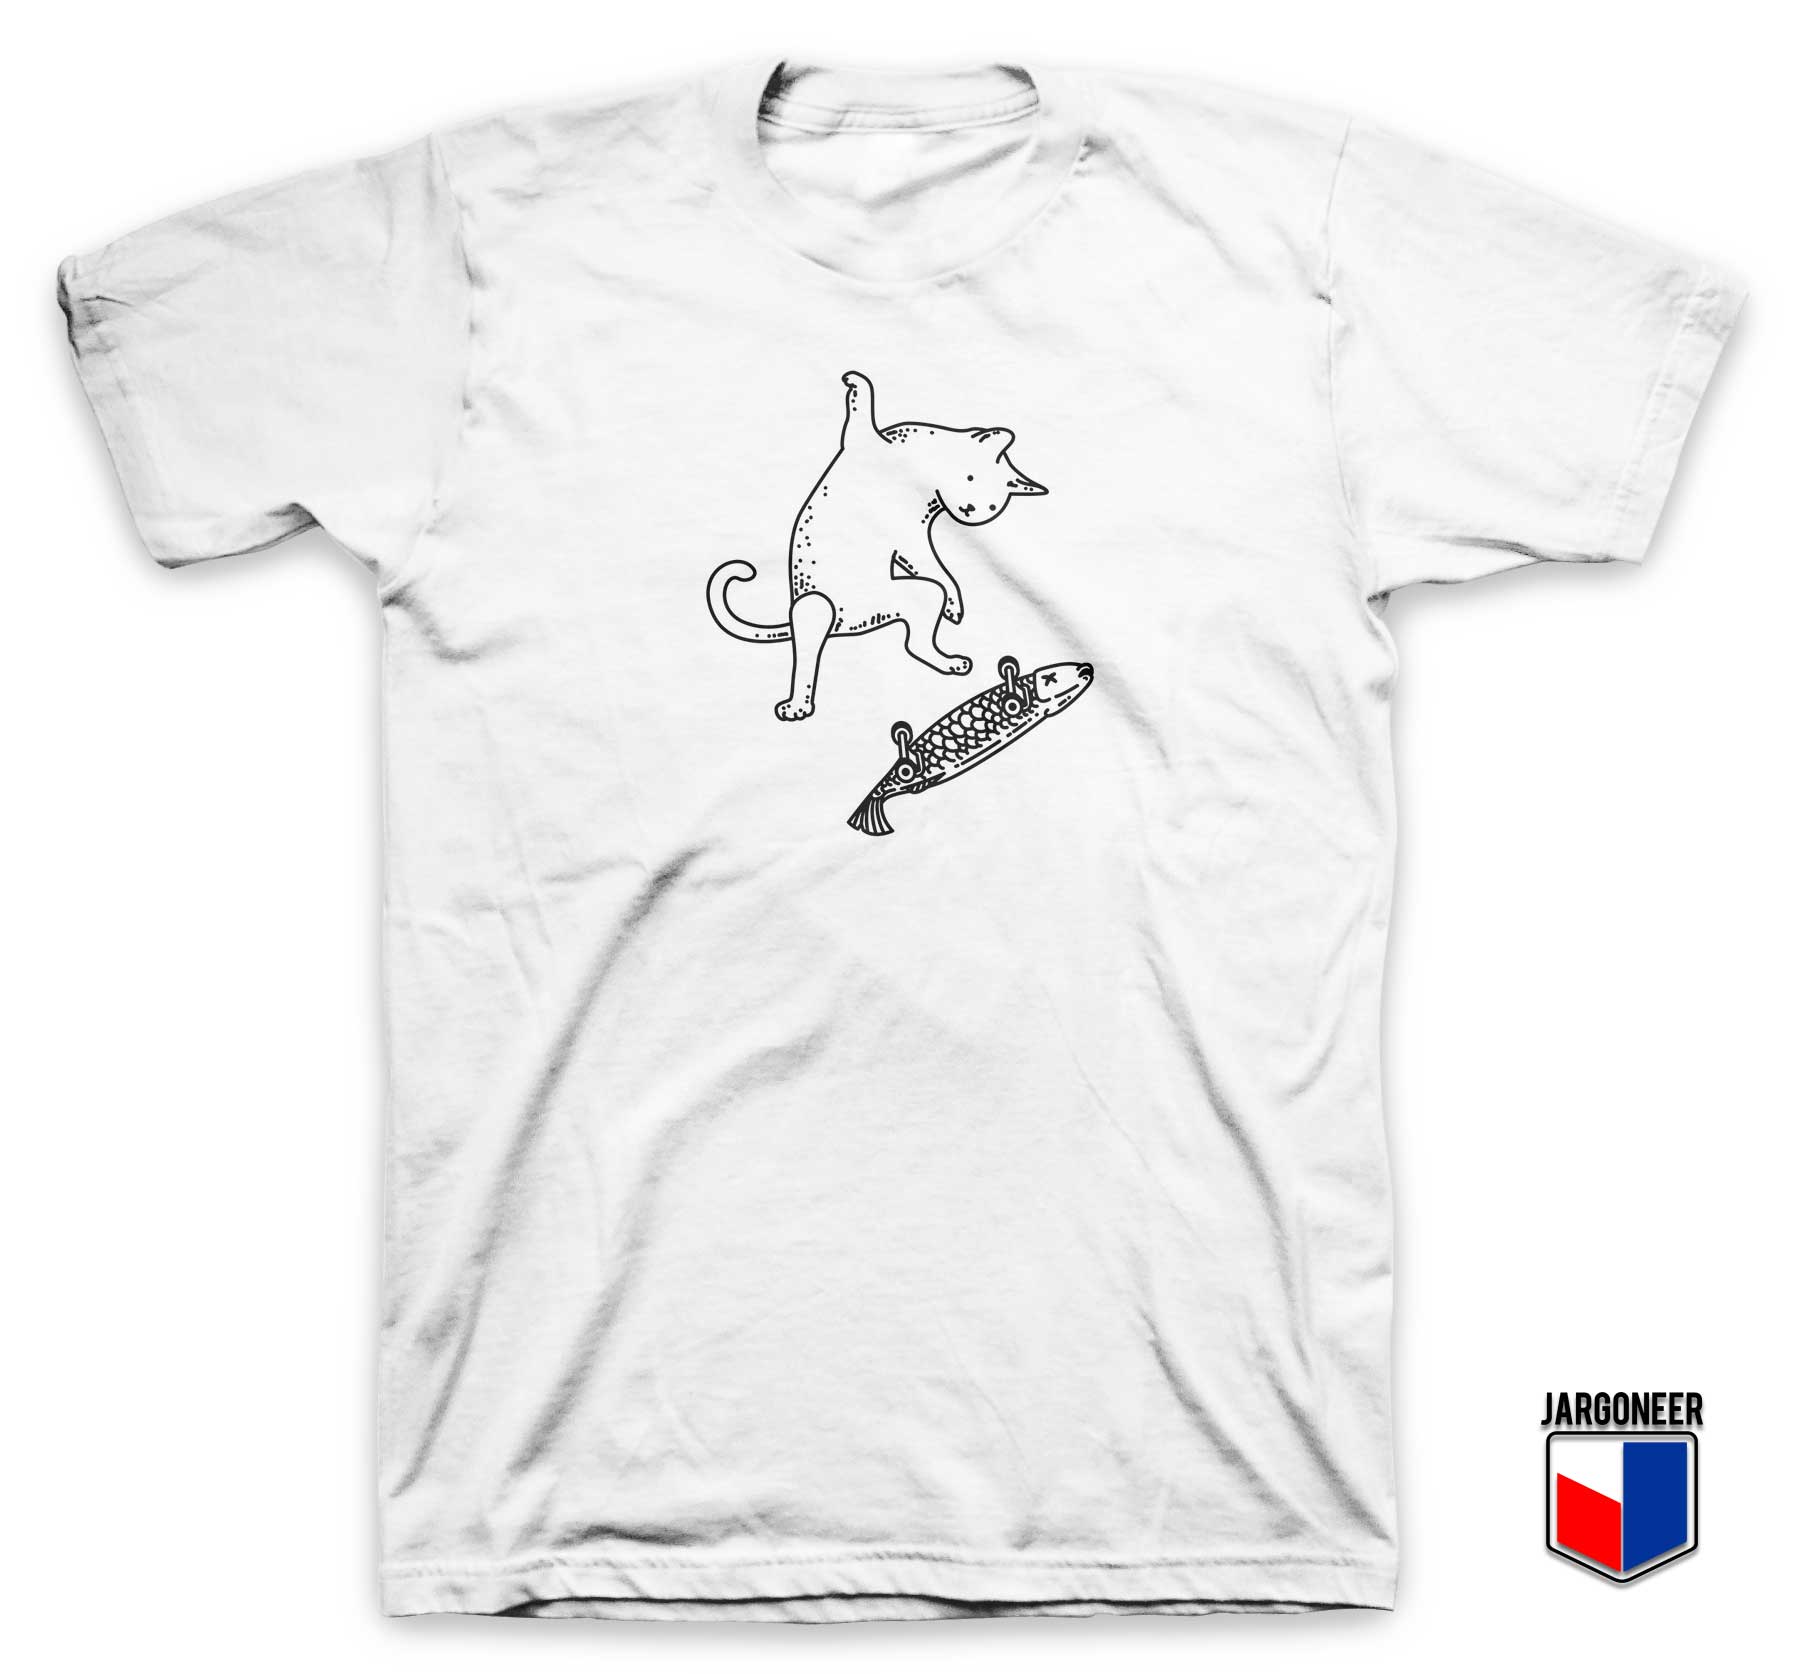 Street Cat Skate T Shirt - Shop Unique Graphic Cool Shirt Designs